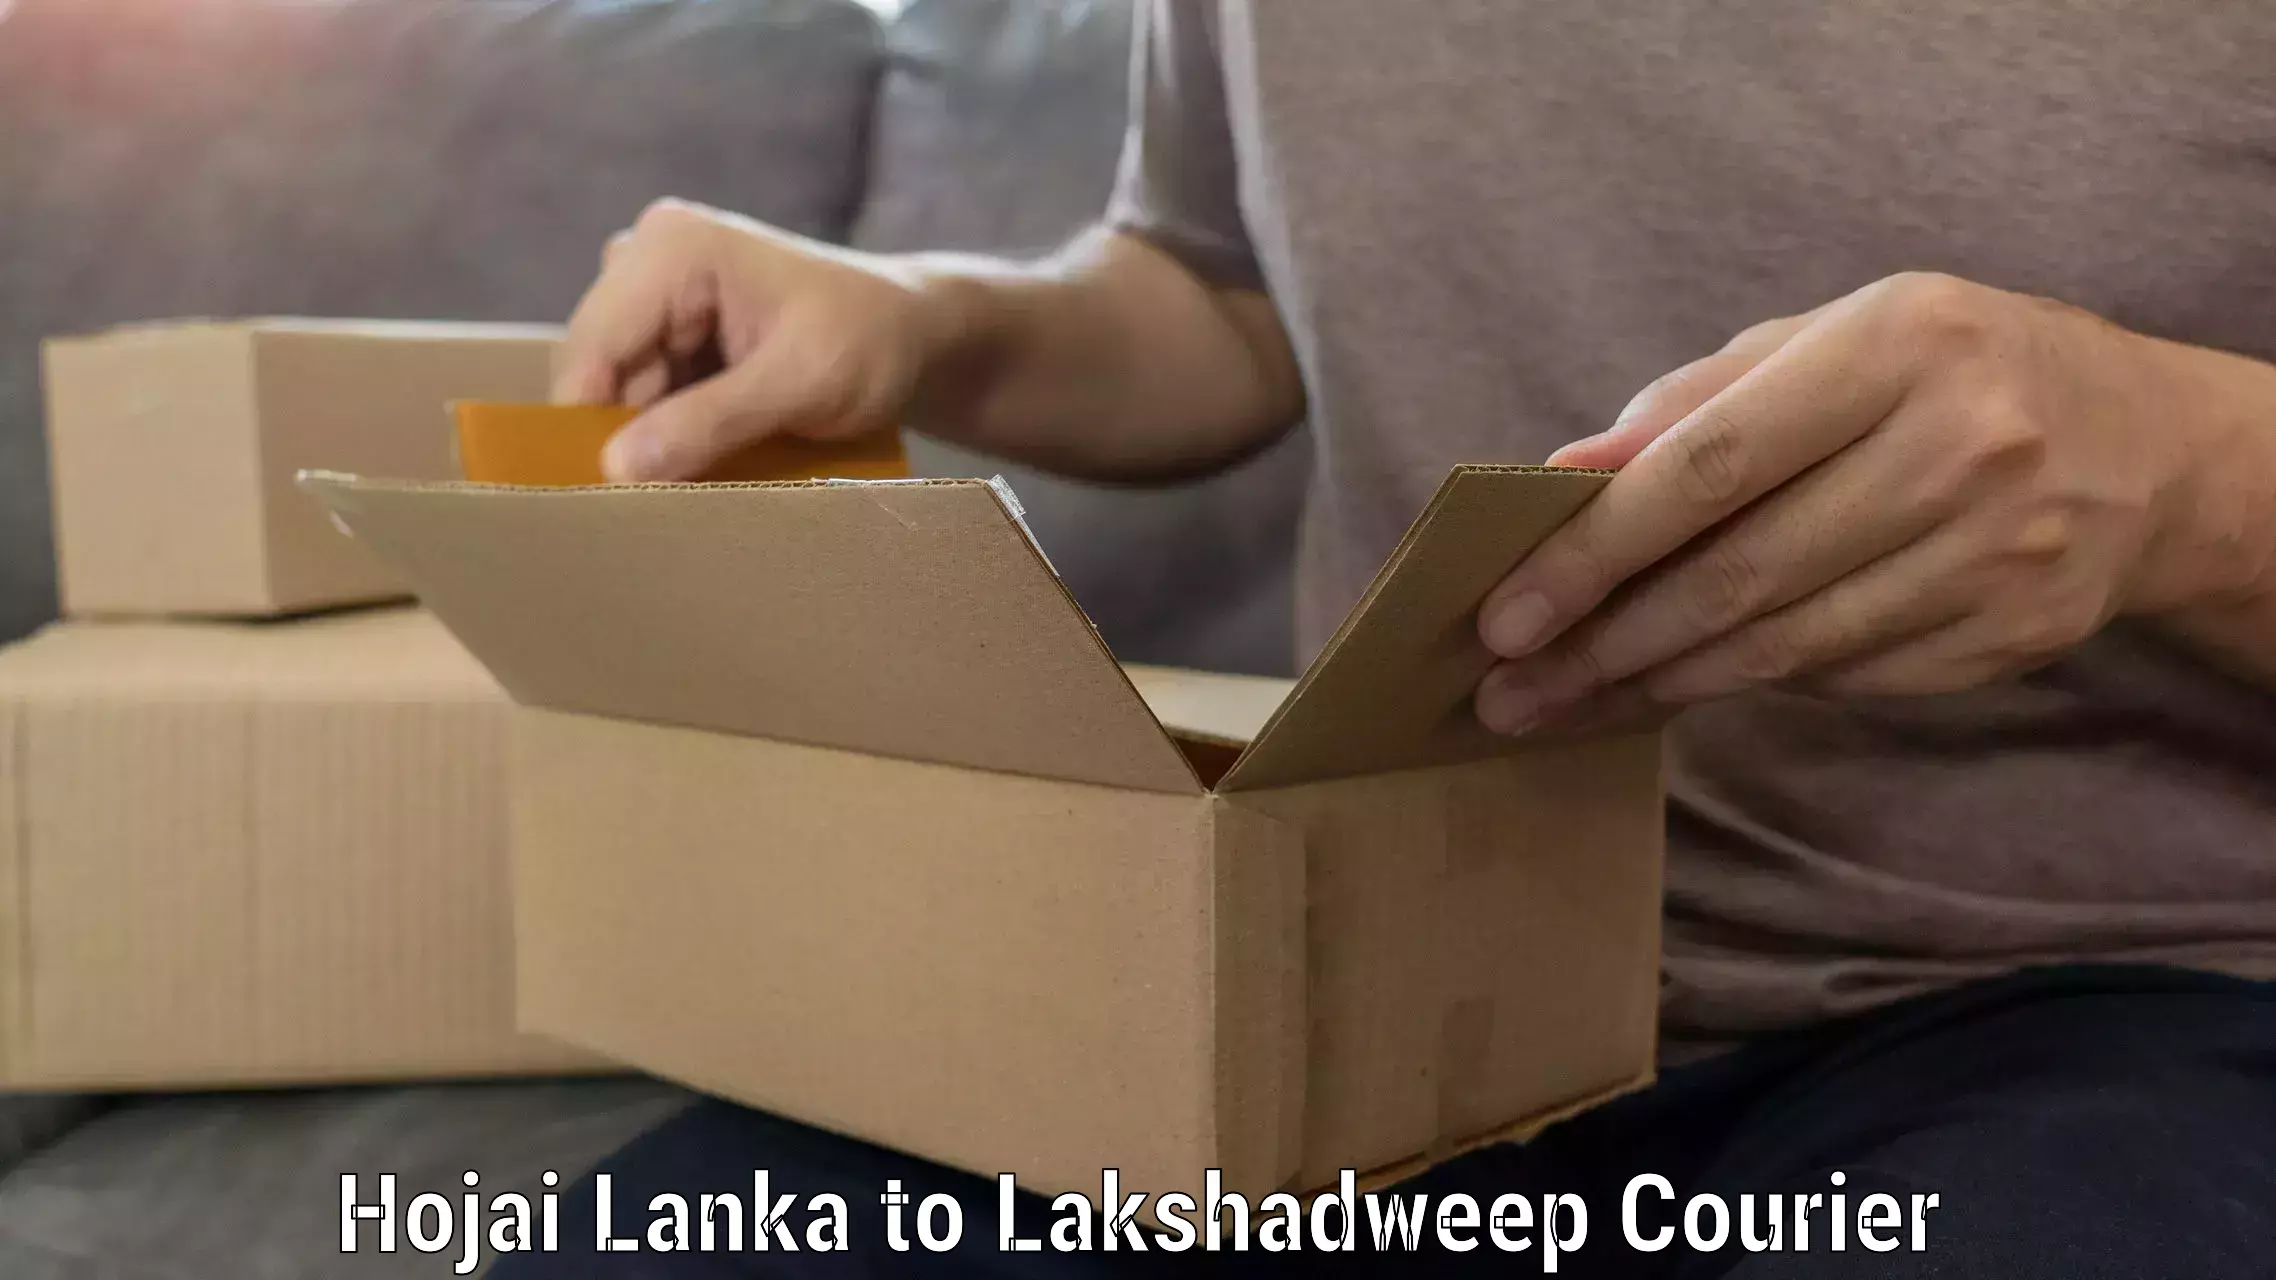 Full-service furniture transport Hojai Lanka to Lakshadweep